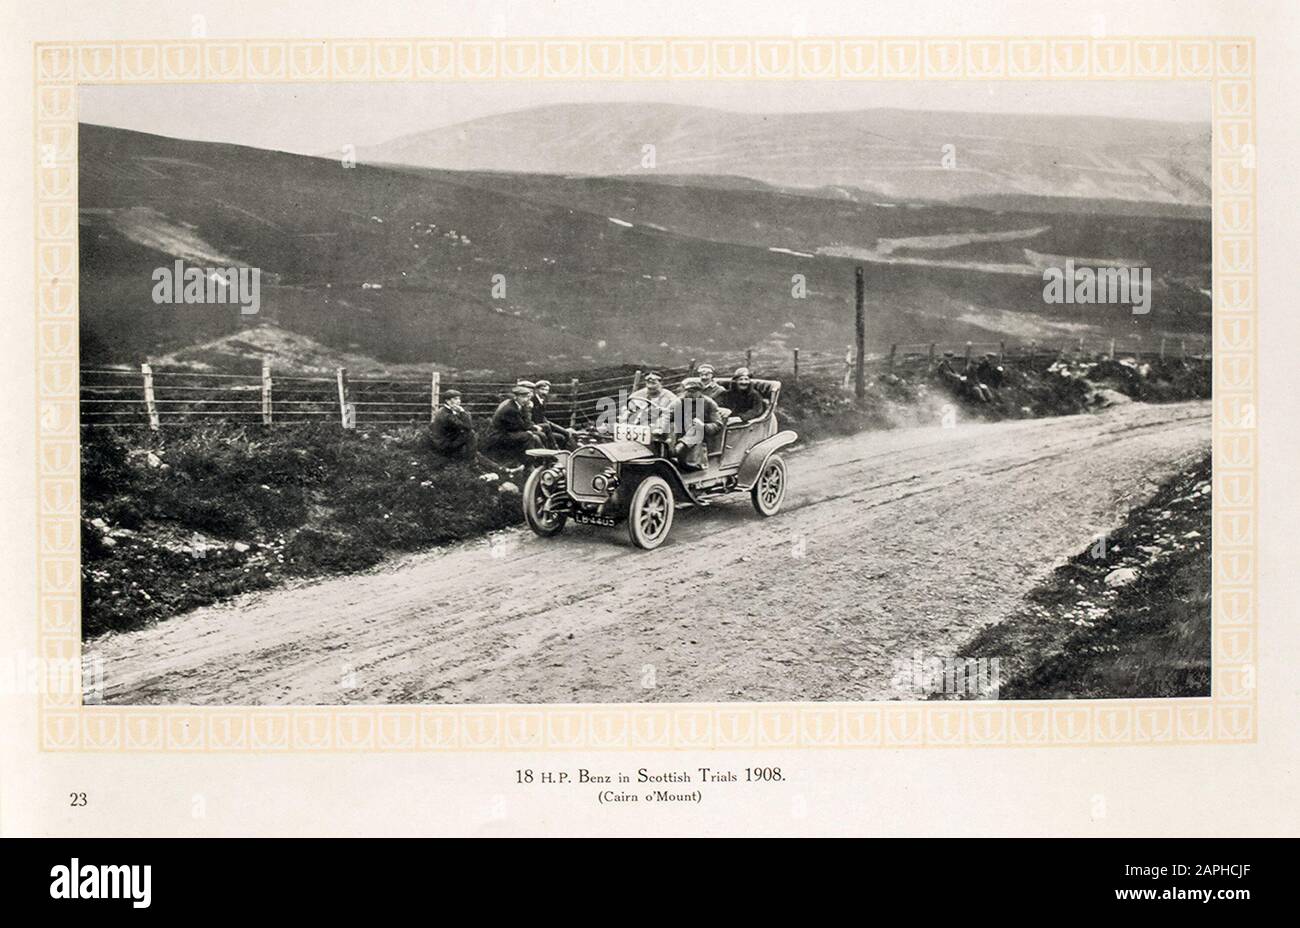 Auto d'epoca, auto a motore Benz, automobile, 18 hp Benz in prove scozzesi, Road test 1908 (Cairn o'mount), dal catalogo commerciale Benz & Co, fotografia 1909 Foto Stock